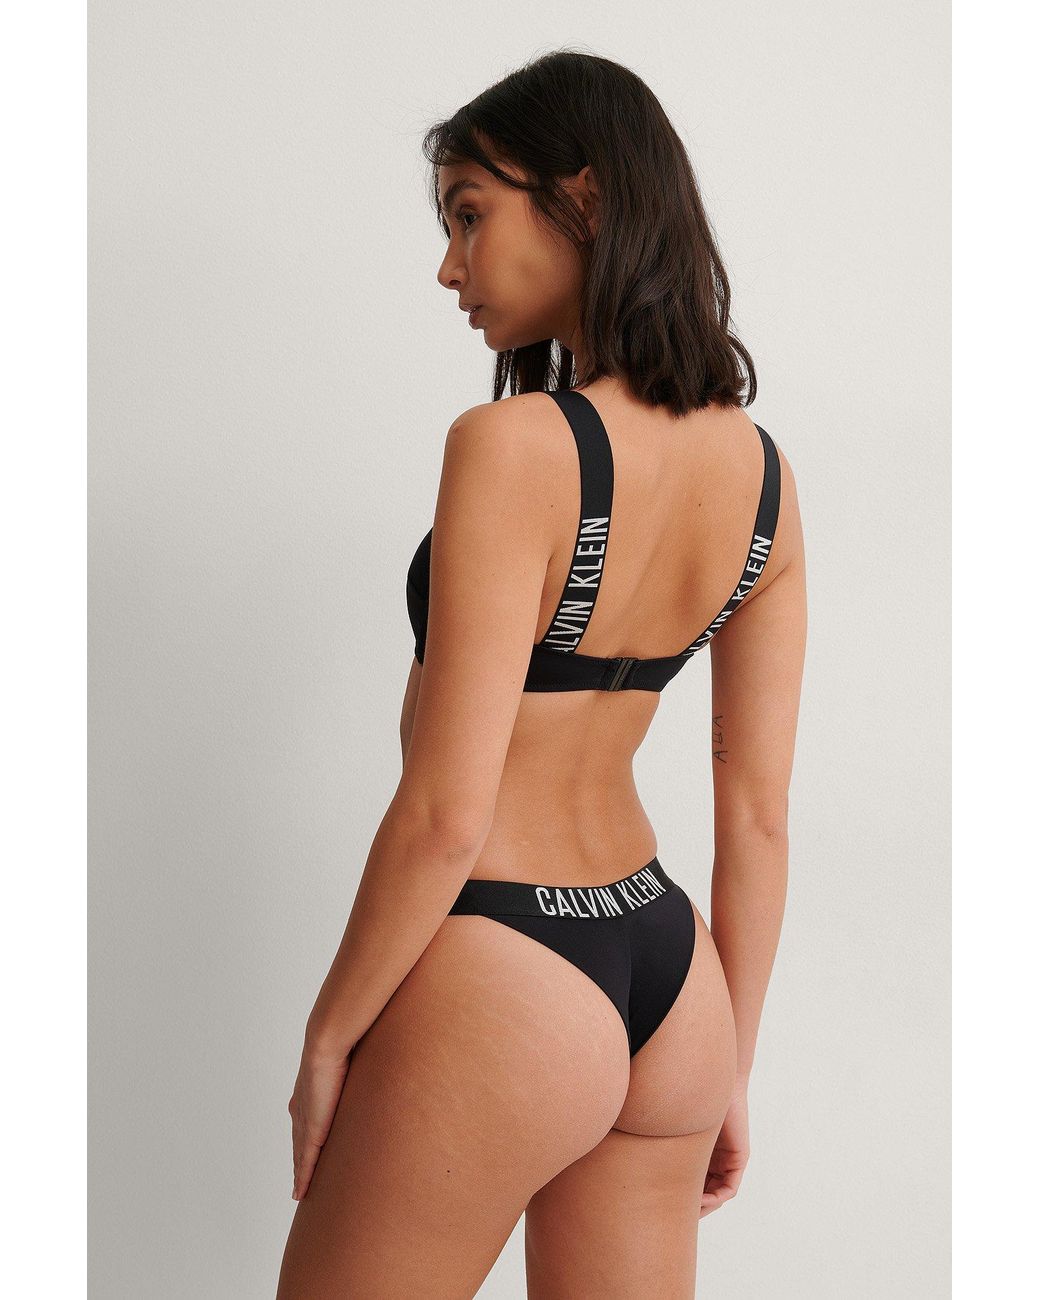 Femme Vêtements Articles de plage et maillots de bain Bikinis et maillots de bain Haut de maillot plage Synthétique Calvin Klein en coloris Noir 